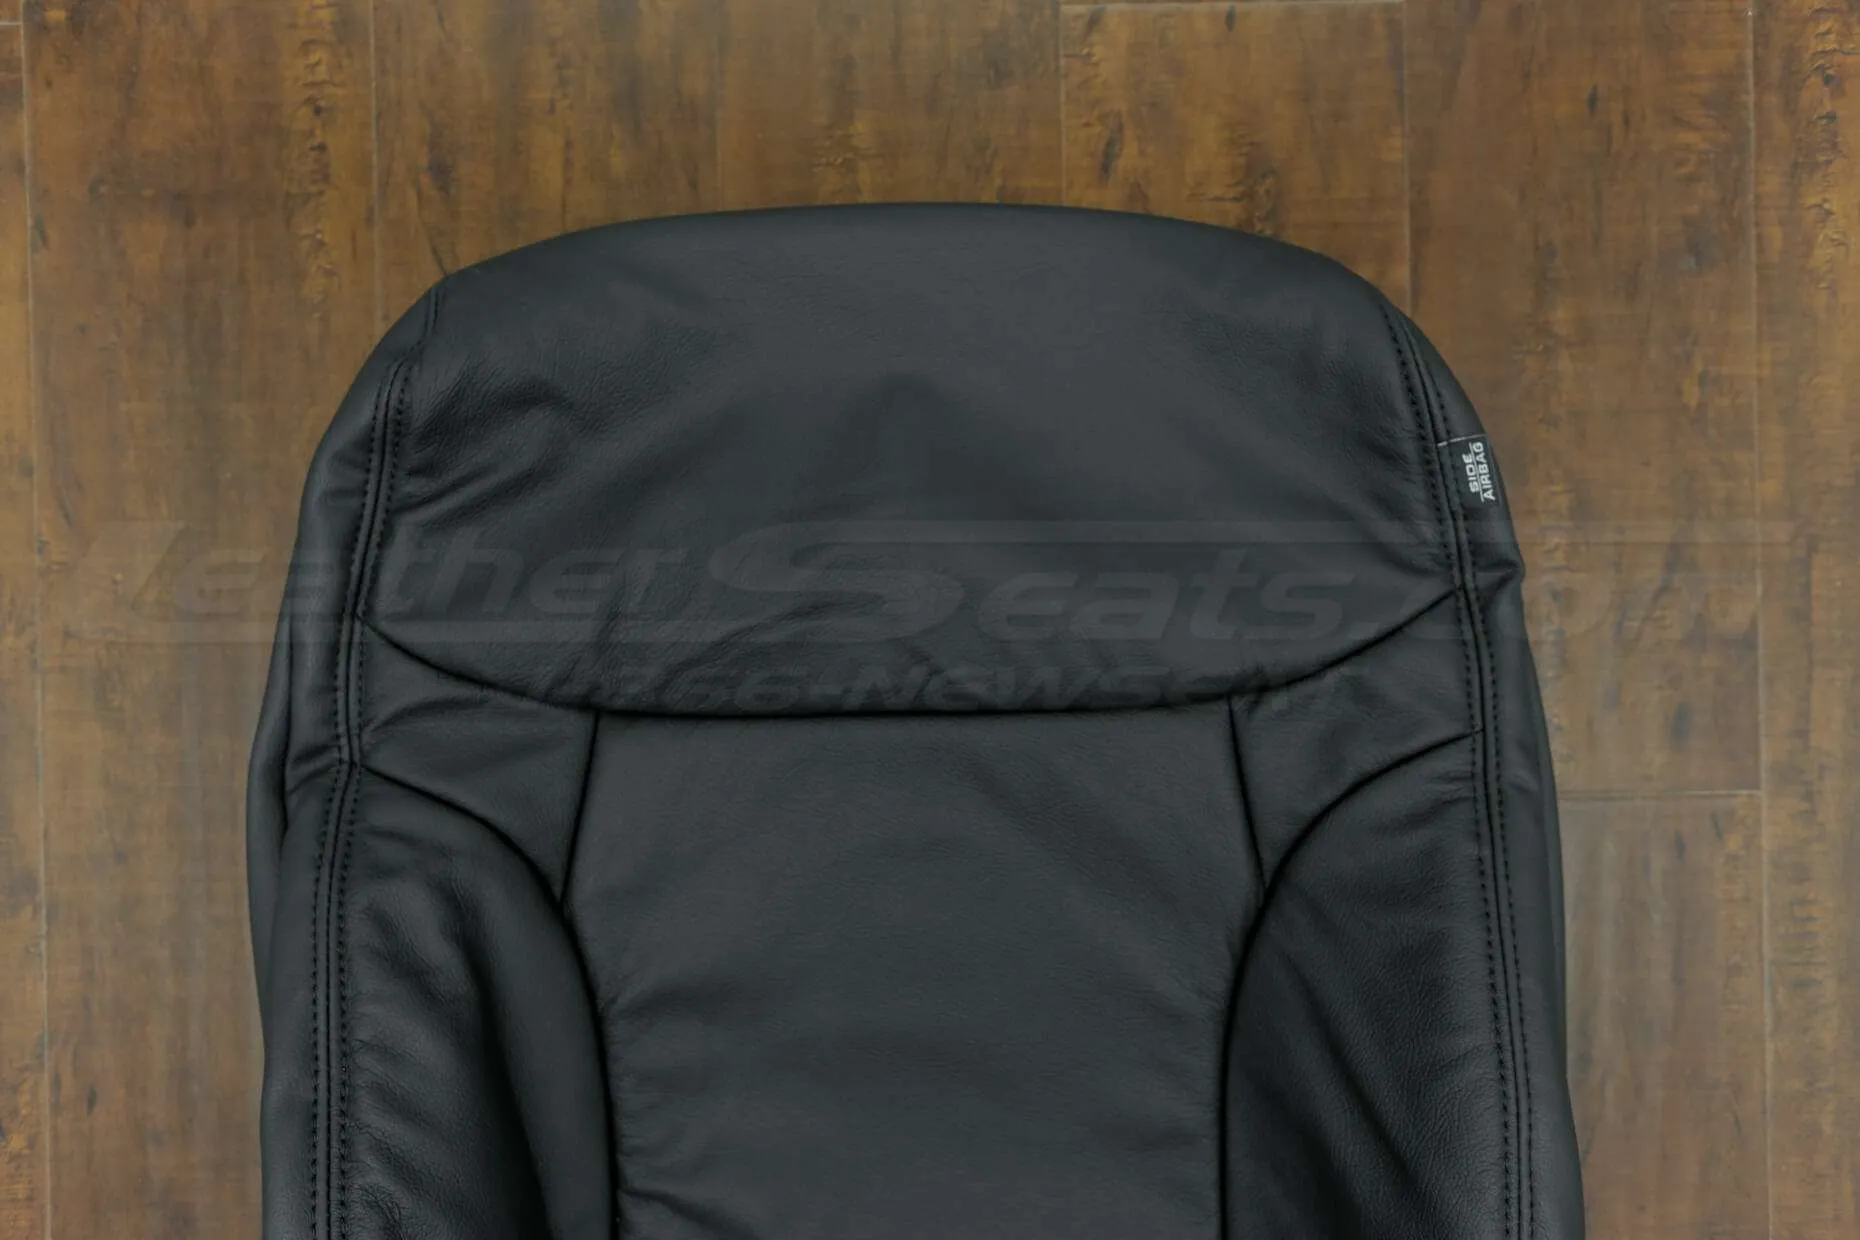 2014-2015 Honda Civic Upholstery Kit - Black - Upper section of backrest